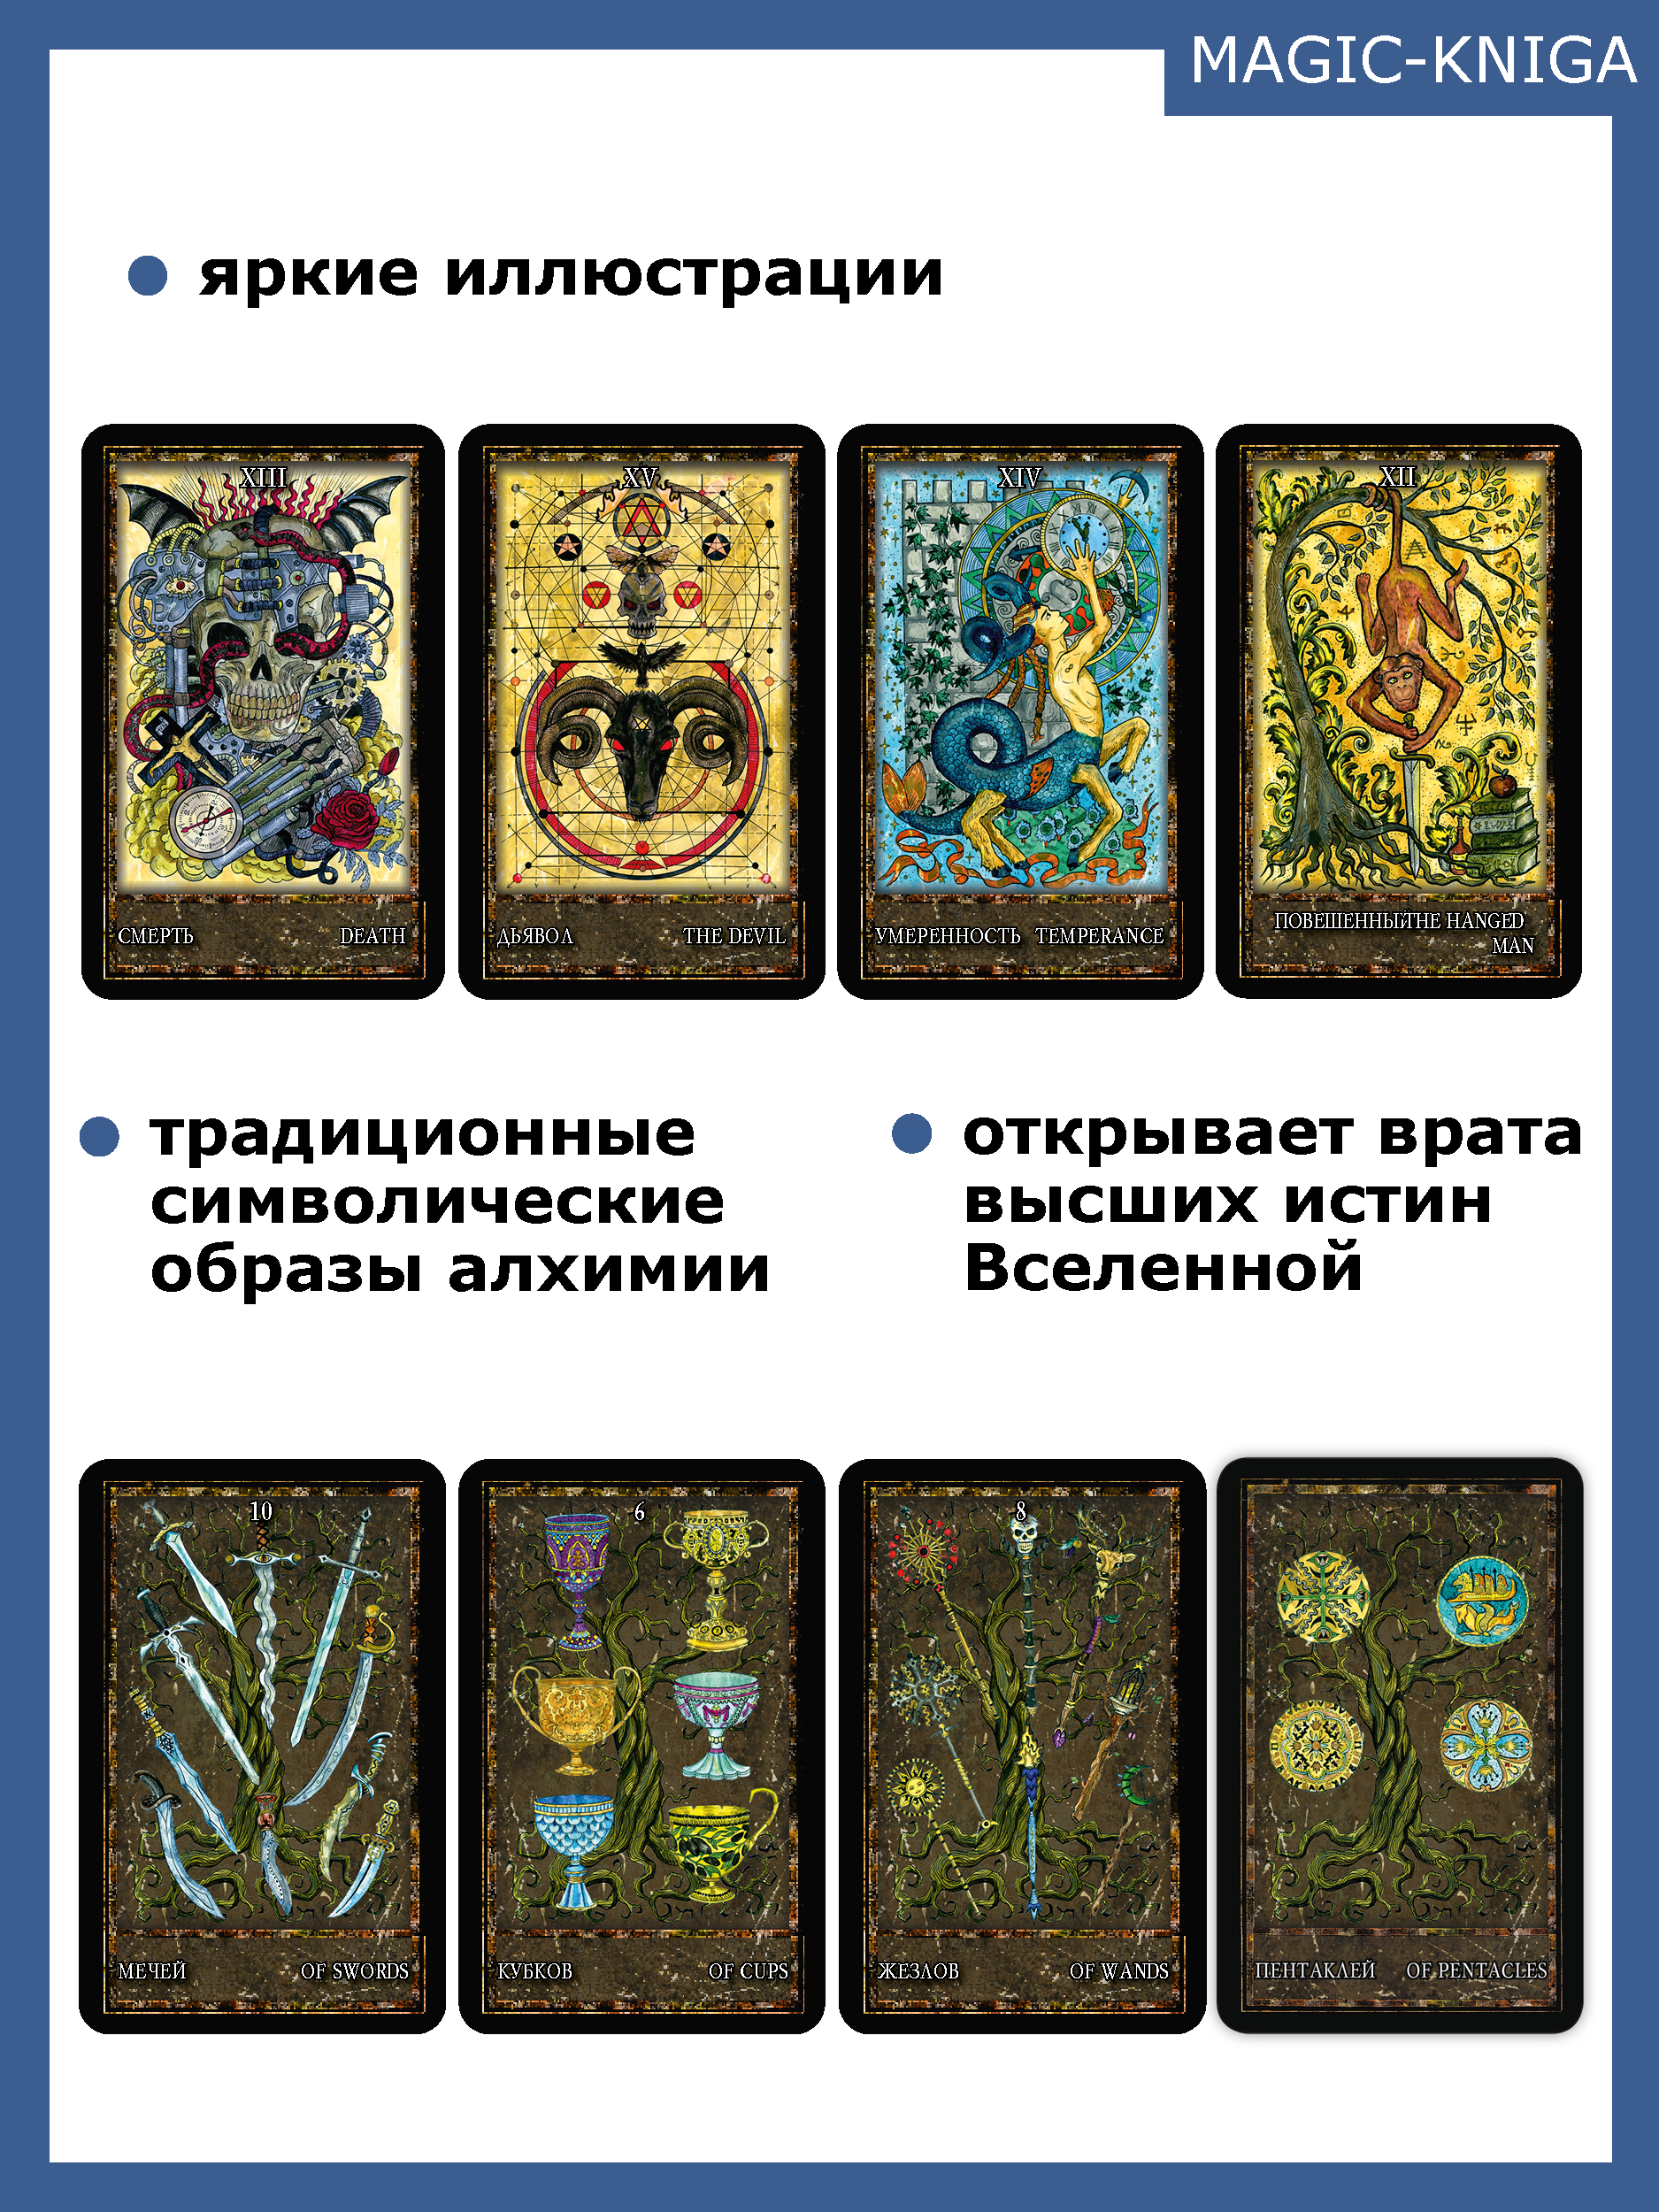 Гадальные карты Таро Волшебные Врата. Magic Gate Tarot (колода с инструкцией для гадания) %% 